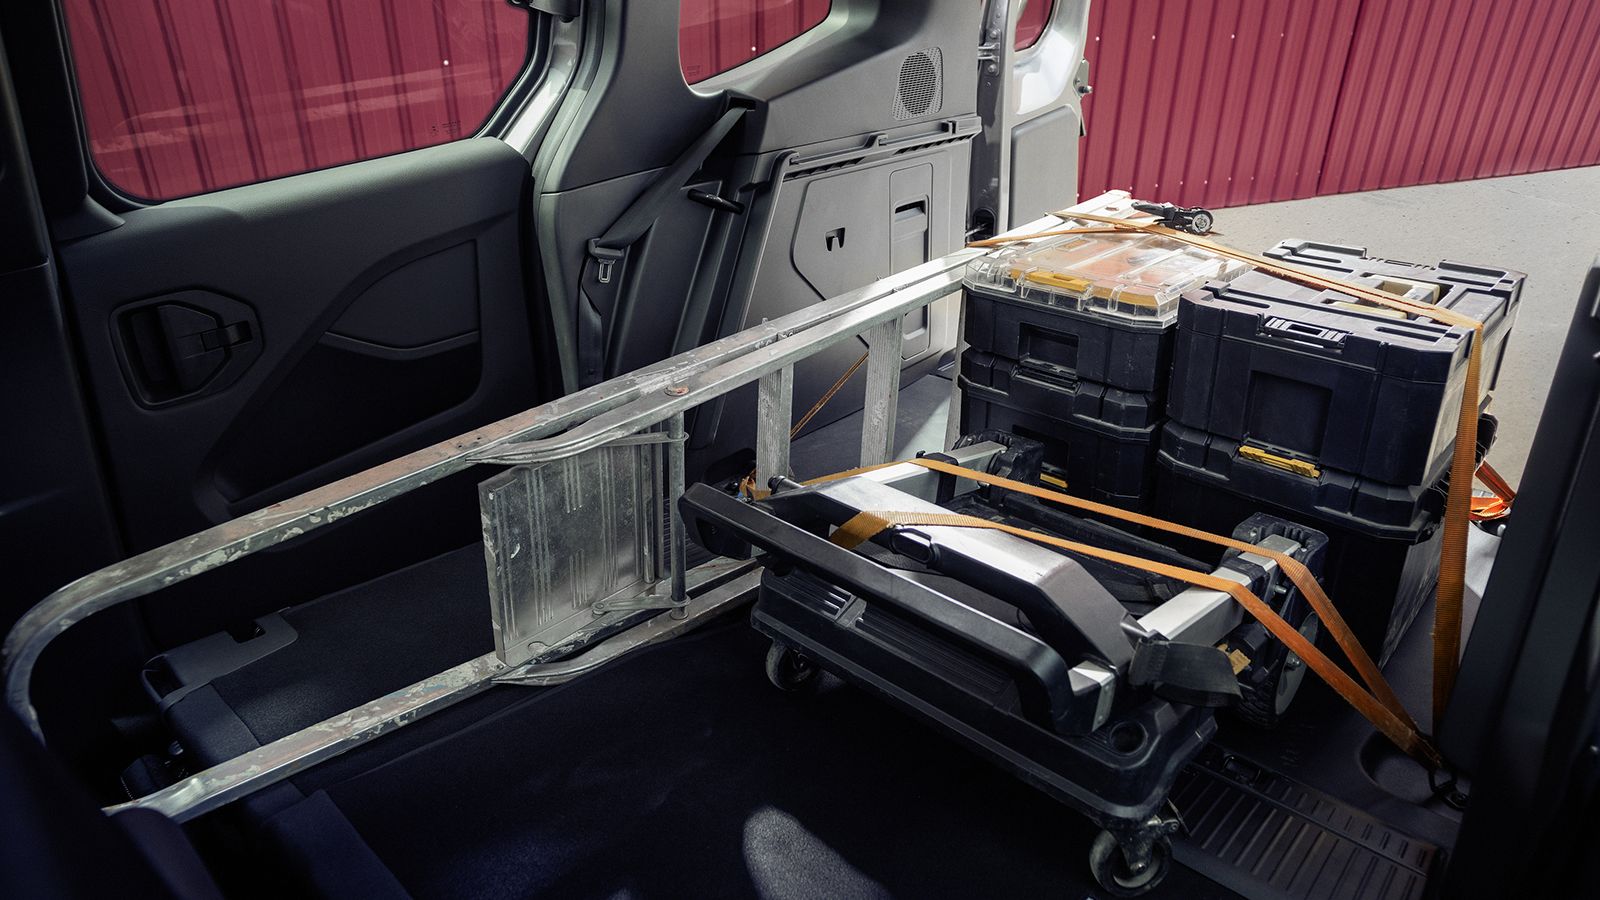 Ο χώρος φόρτωσης είναι εύκολα προσβάσιμος και από το πίσω μέρος, καθώς το κατώφλι φόρτωσης του Van βρίσκεται σε ύψος 59 cm.